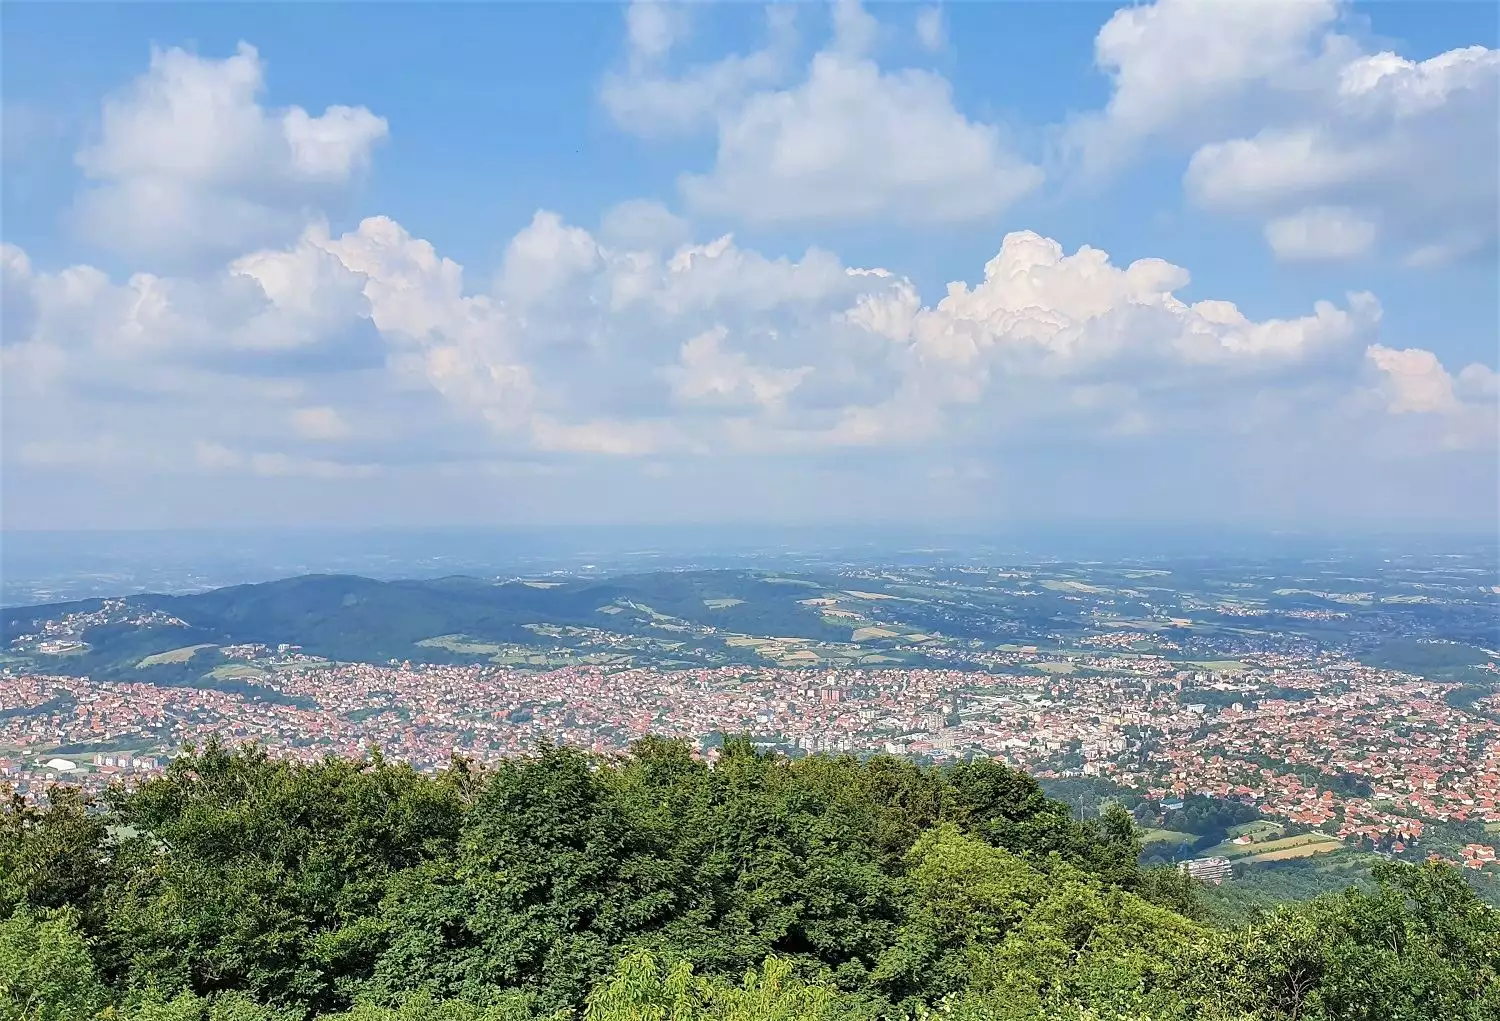 View from Bukulja Peak